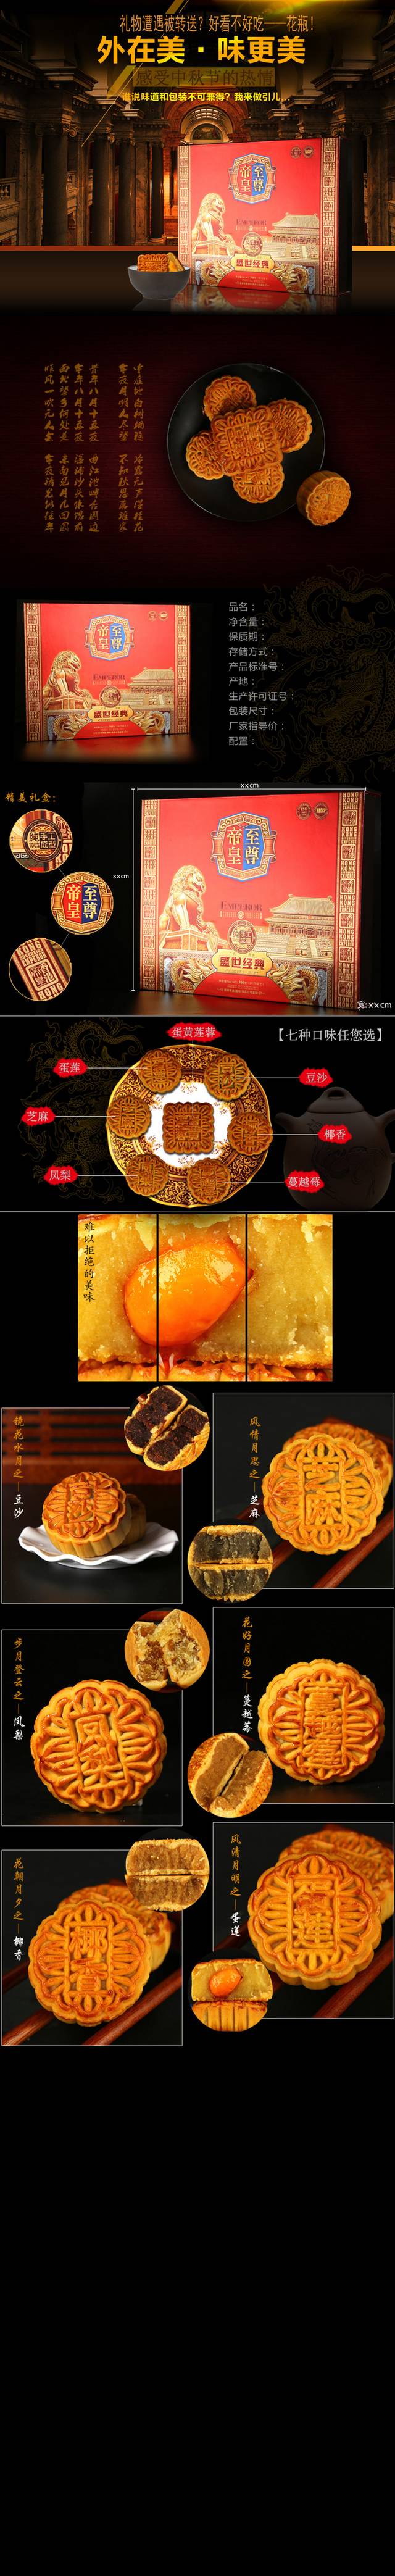 淘宝天猫中秋月饼食品详情页PSD模版